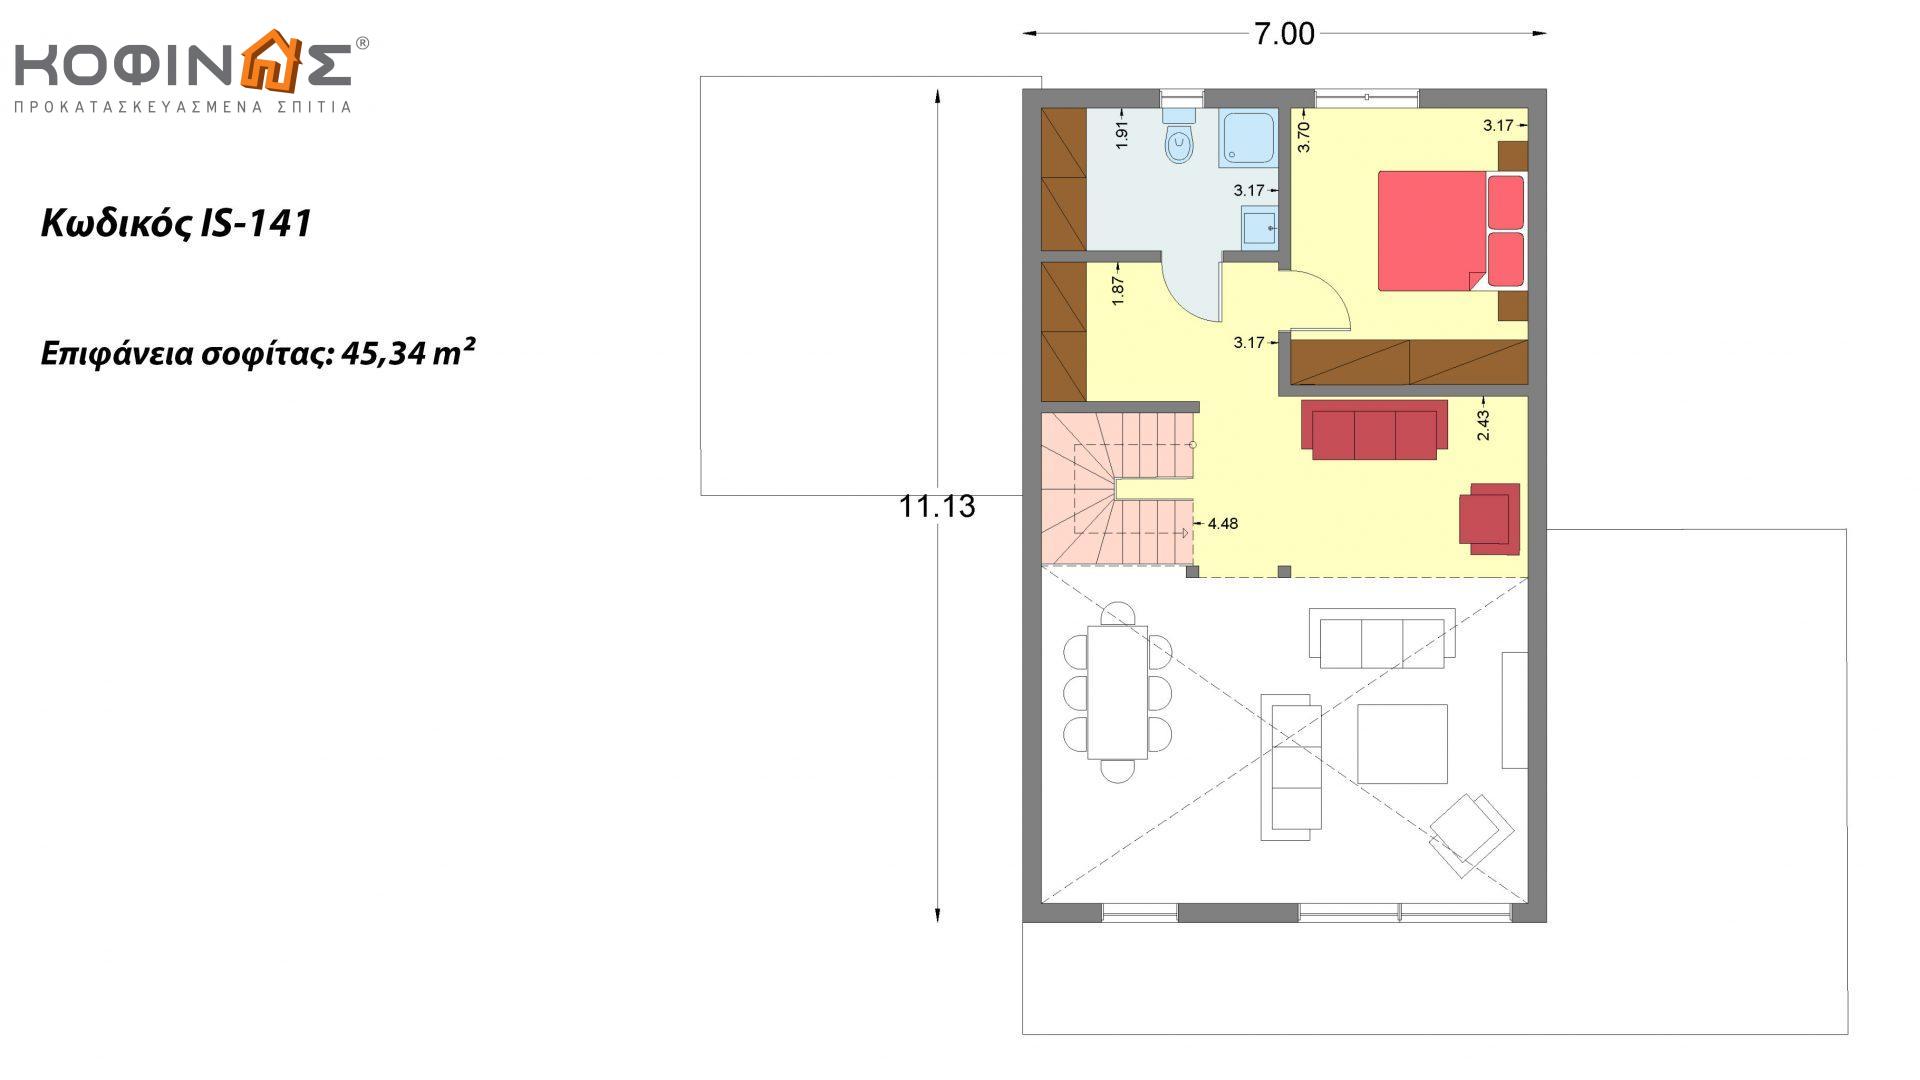 Ισόγεια Κατοικία με Σοφίτα IS-141, συνολικής επιφάνειας 141,95 τ.μ. , +Γκαράζ 27.08 m²(=169.03 m²),συνολική επιφάνεια στεγασμένων χώρων 15.91 τ.μ.